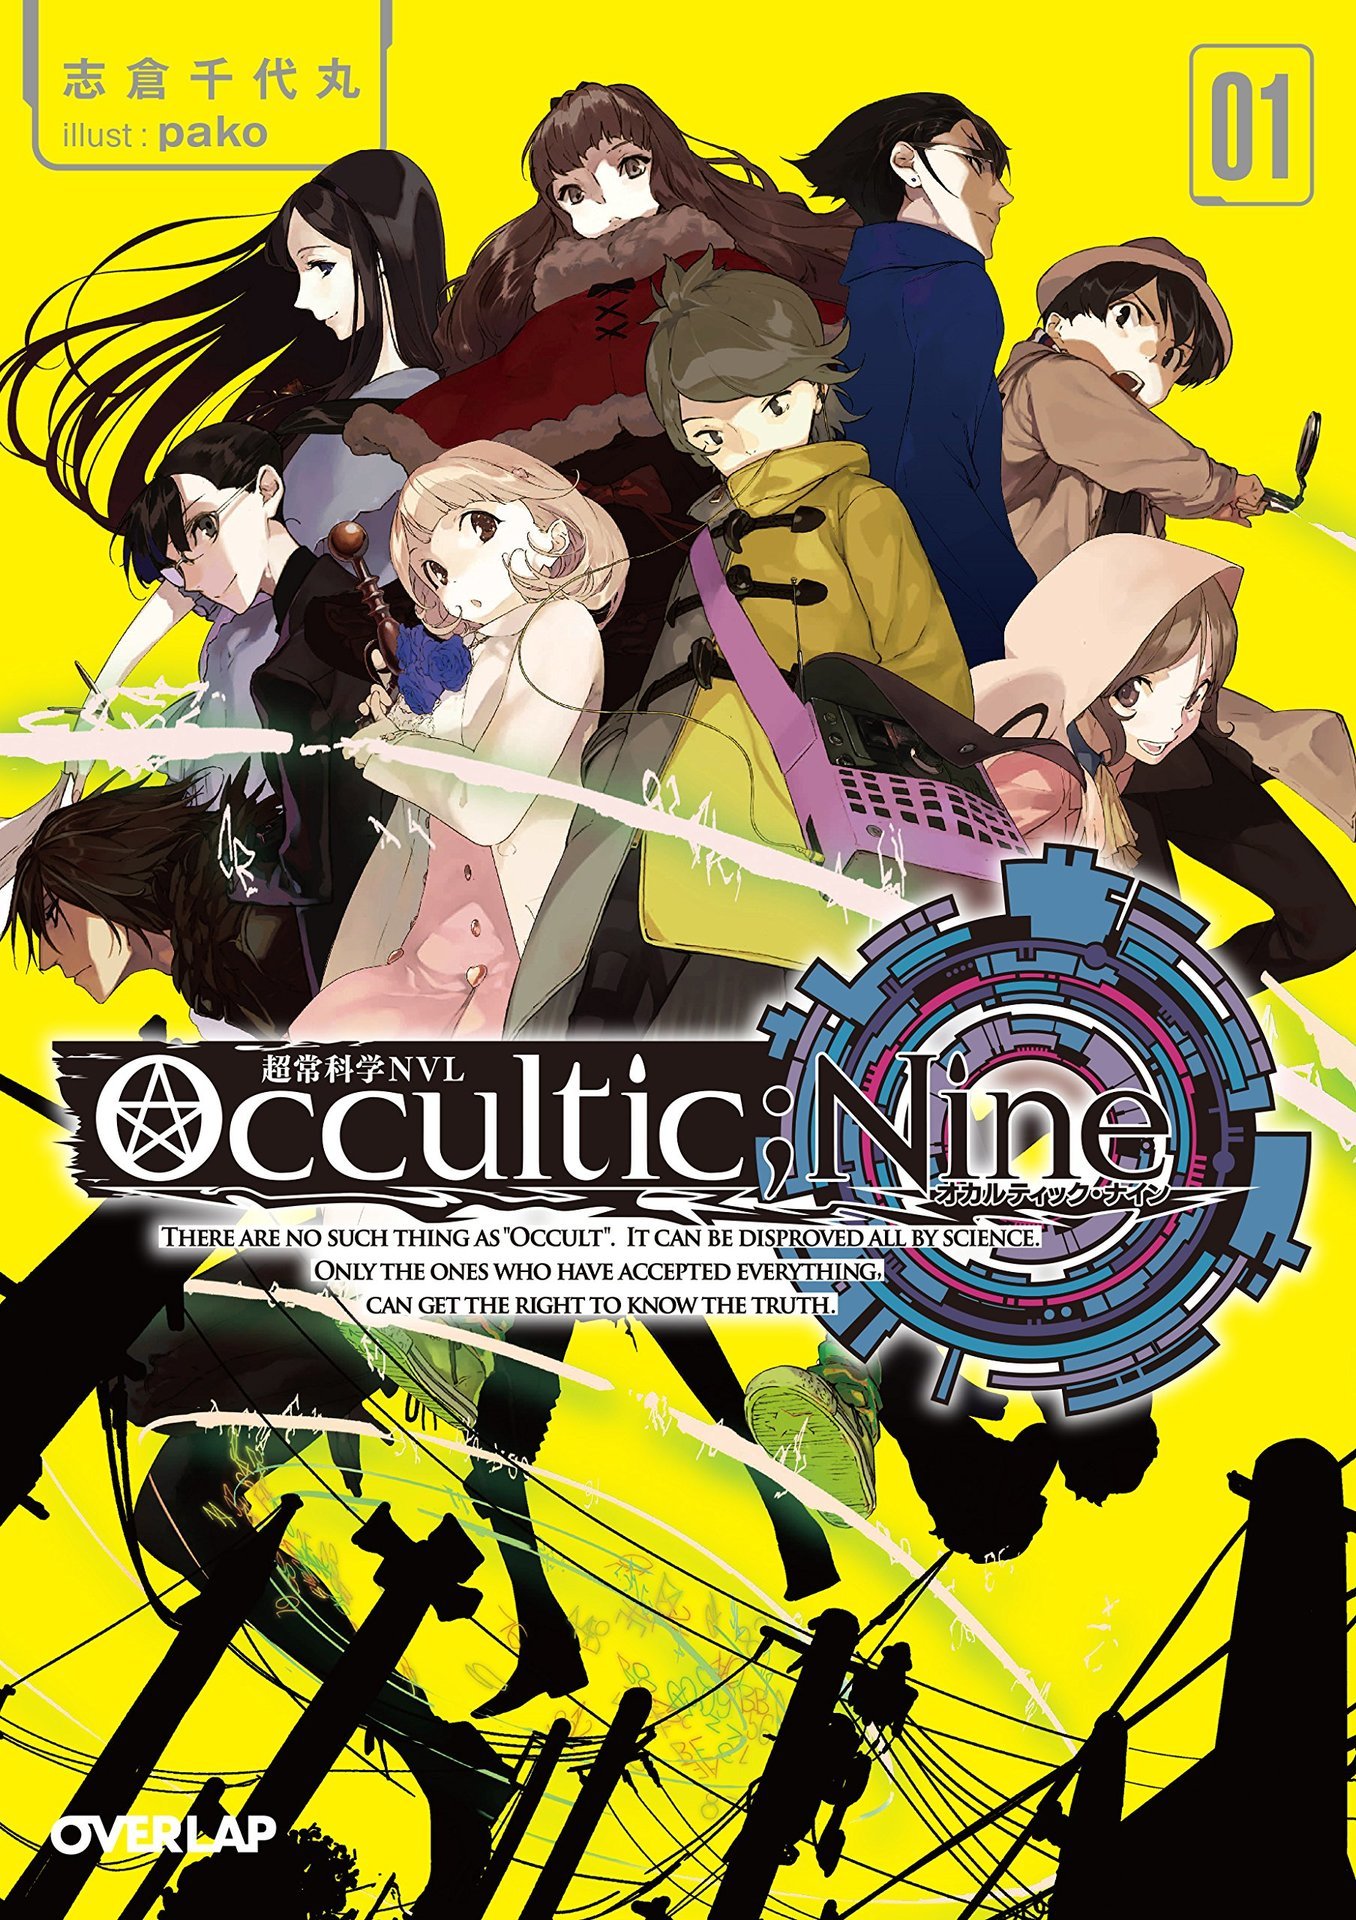 テレビアニメ Occultic Nine オカルティック ナイン のアニメキービジュアルを公開 制作発表会が8月12日に開催 マンガのことを書いたブログ